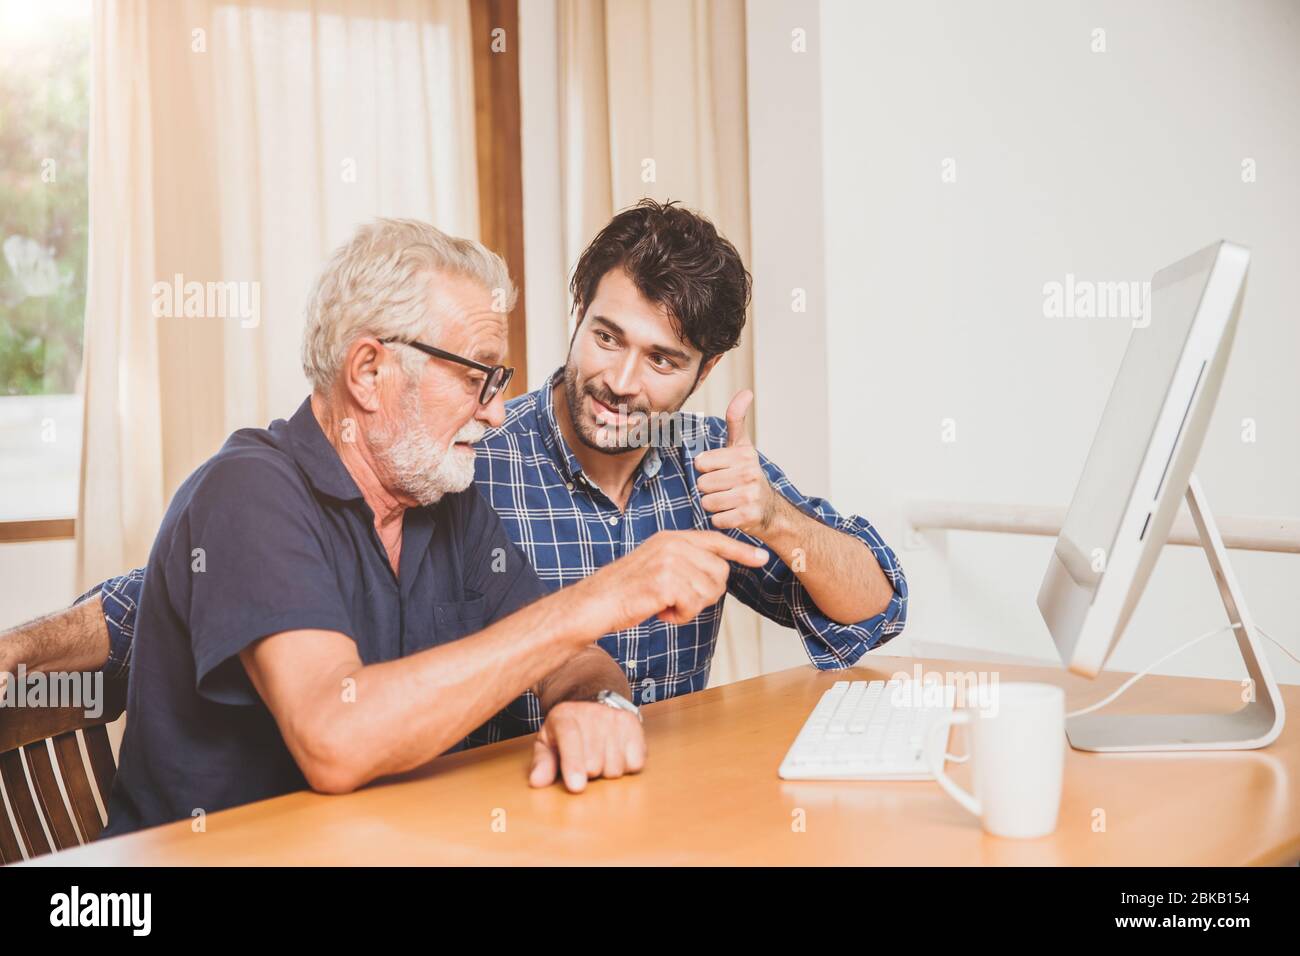 jeune homme ou fils enseignant à son grand-père vieux père apprendre à utiliser l'ordinateur à la maison. Banque D'Images